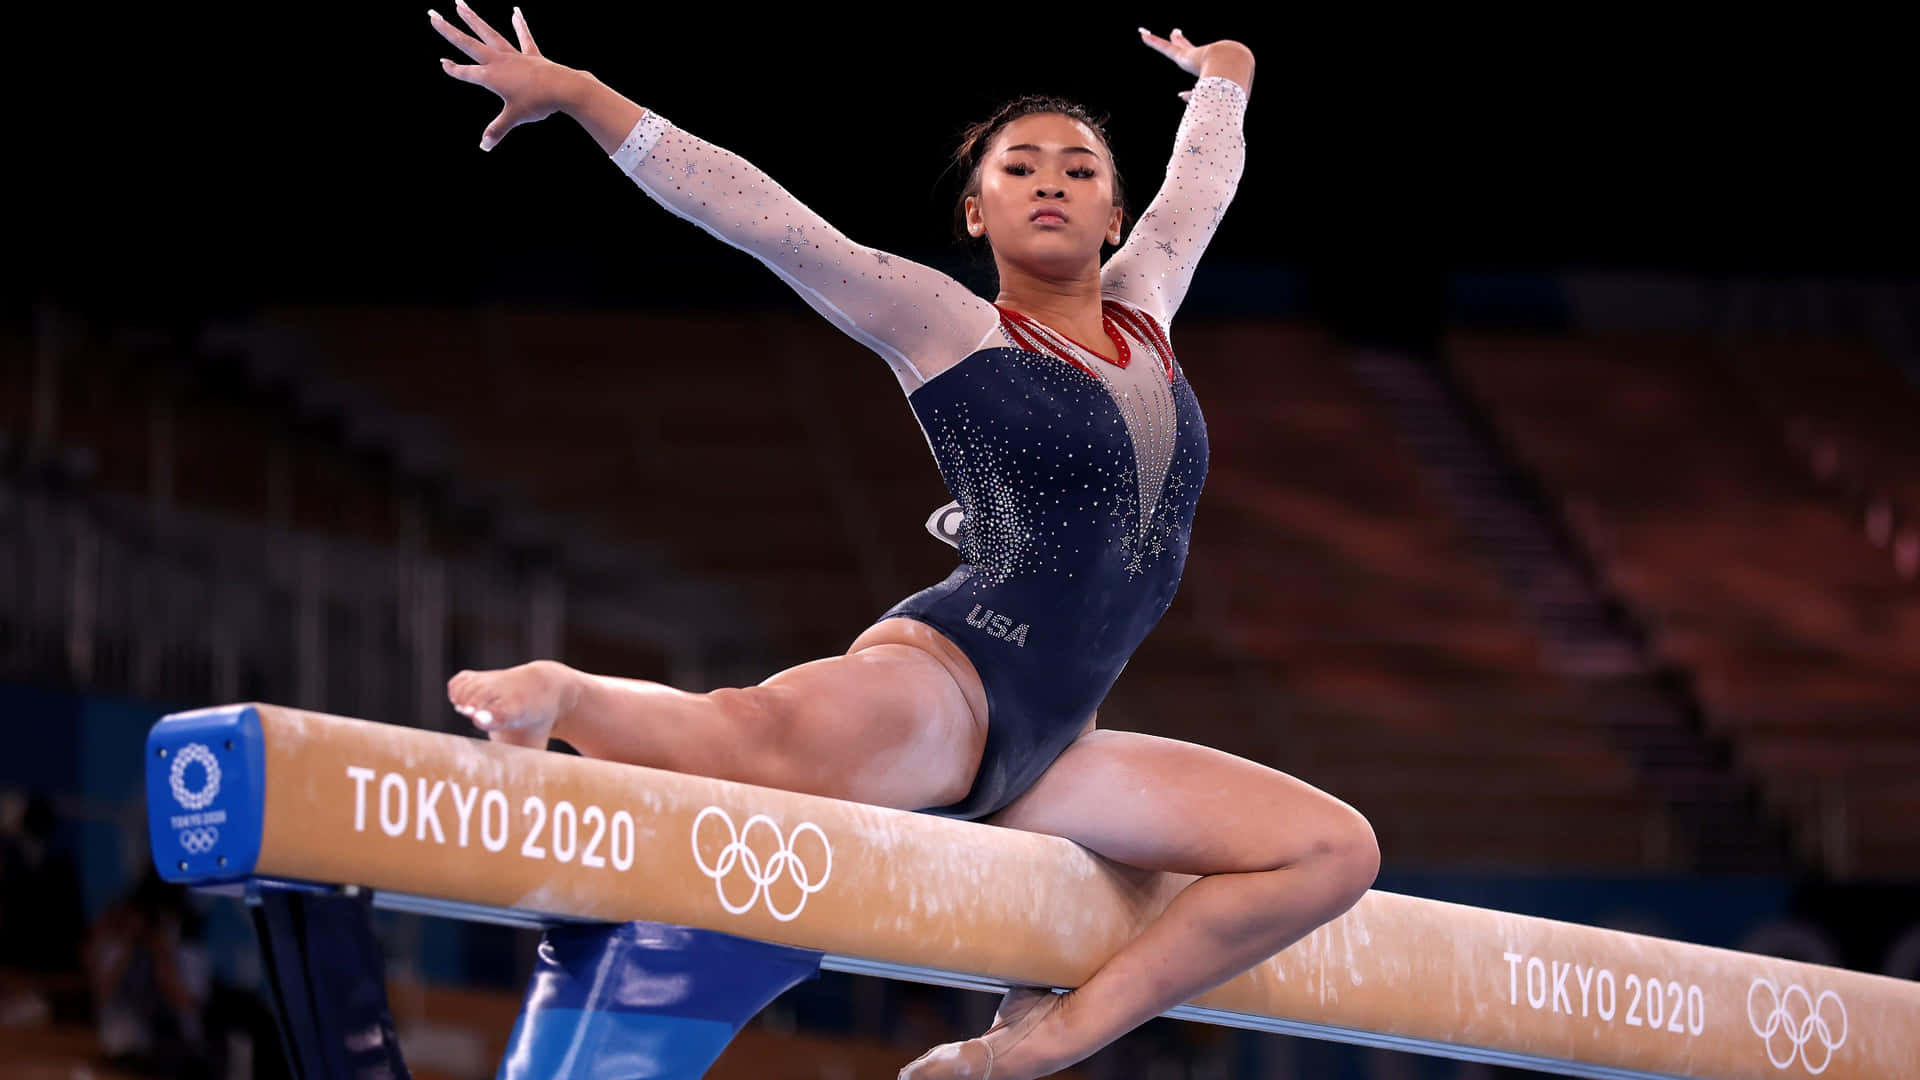 A Gymnast Preparing to Soar